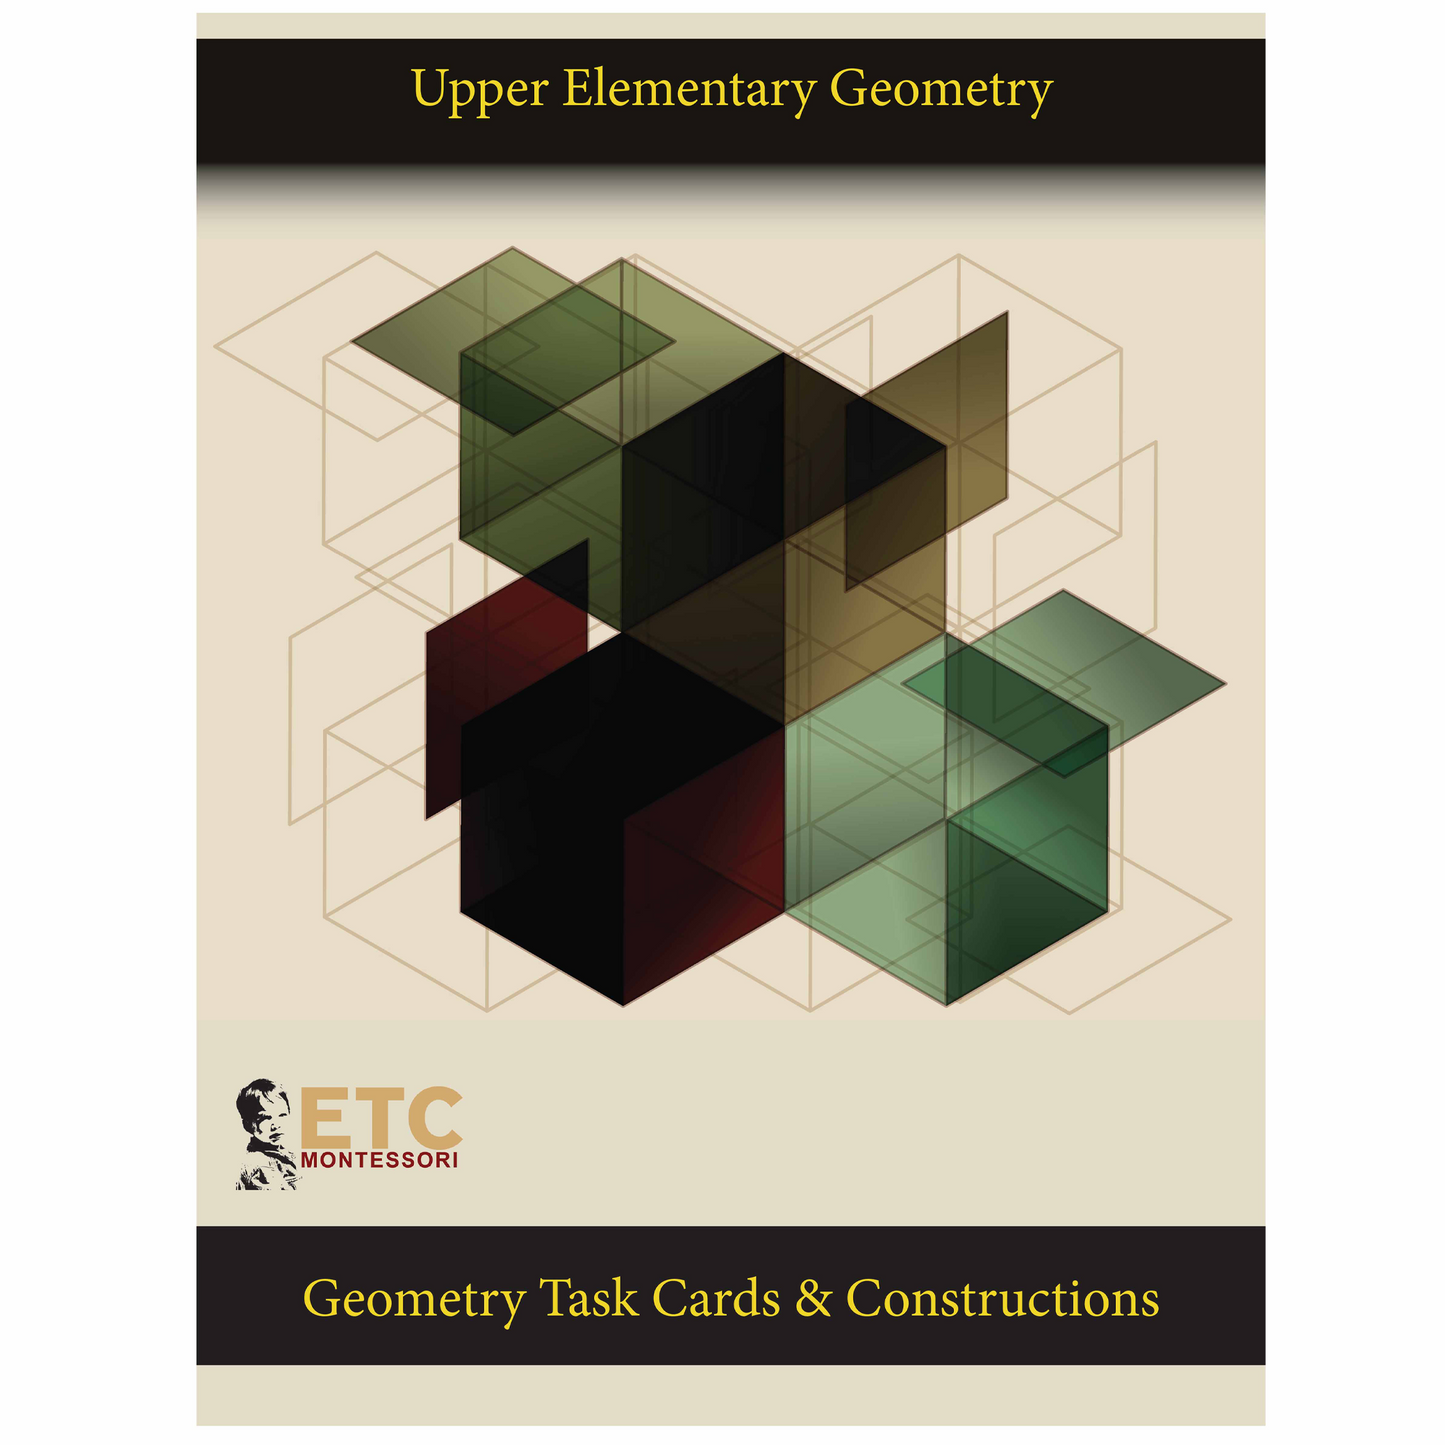 Obere Elementargeometrie - Aufgabenkarten - Nienhuis AMI